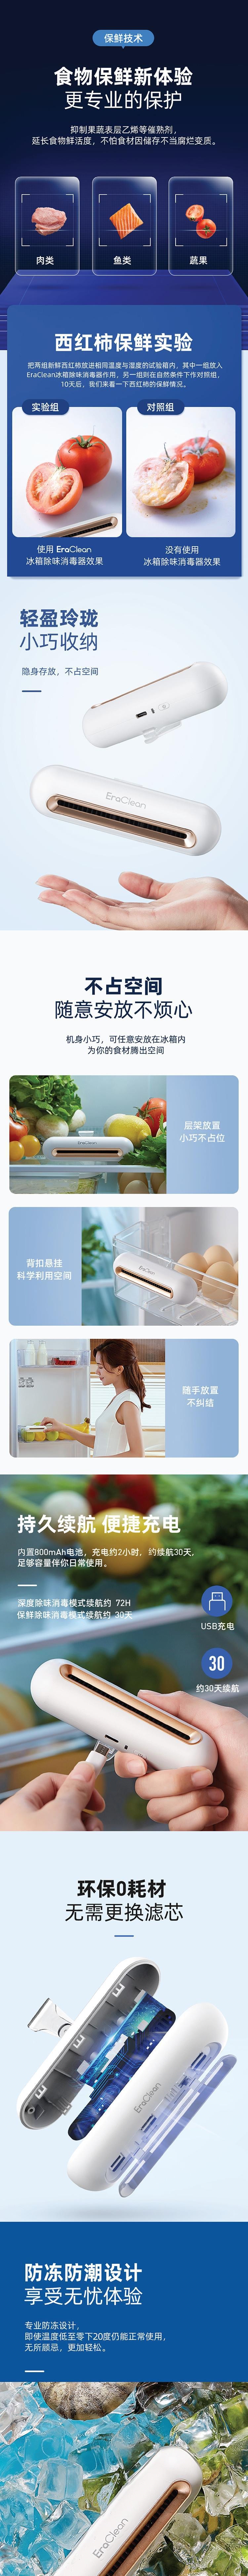 小米生態鏈 EraClean-世淨冰箱除味貼升級版2Pro CW-BS02 白色